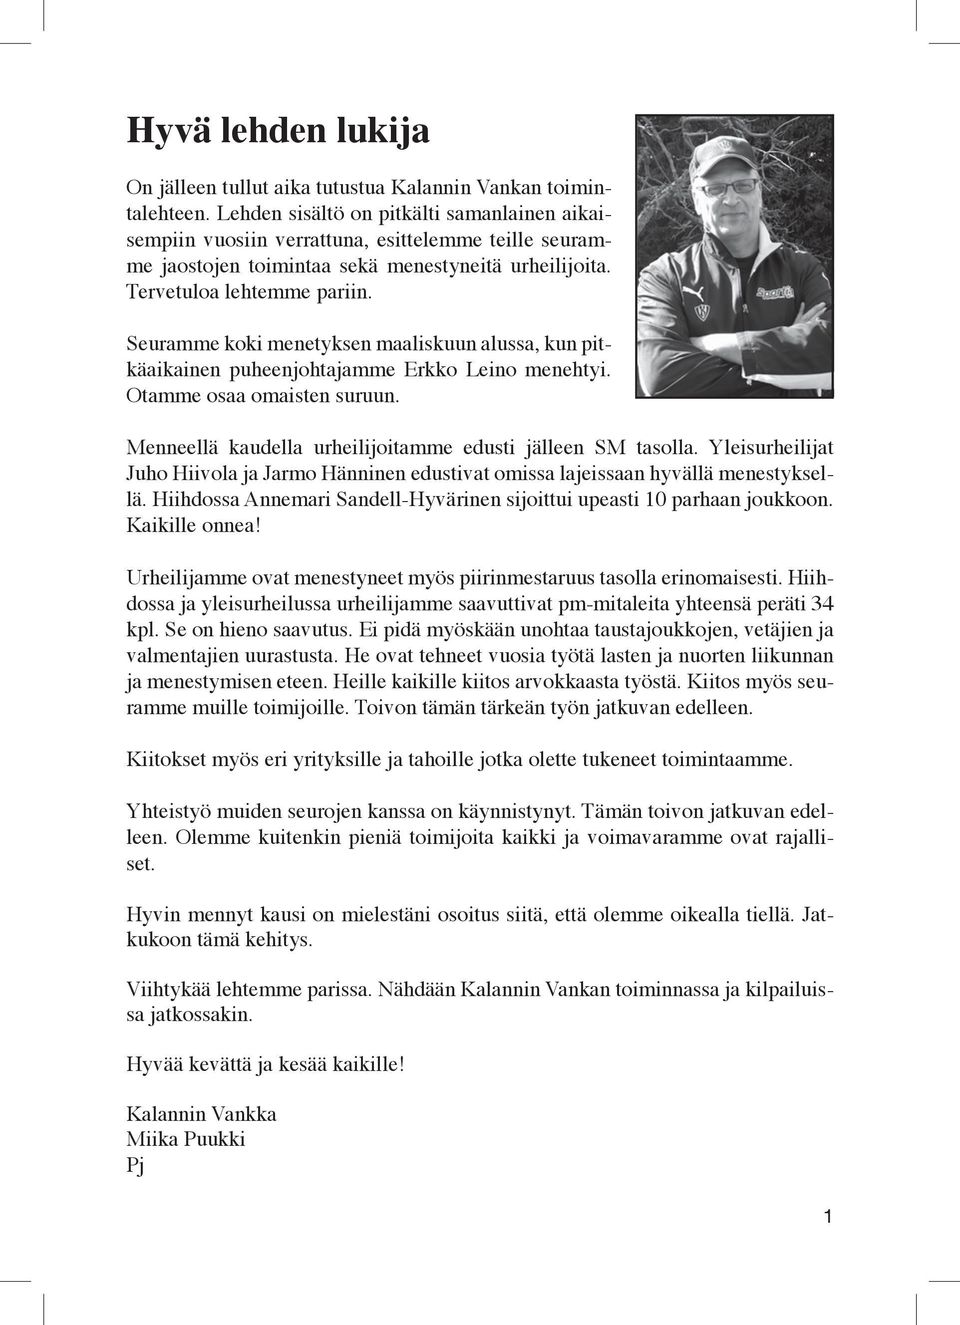 Seuramme koki menetyksen maaliskuun alussa, kun pitkäaikainen puheenjohtajamme Erkko Leino menehtyi. Otamme osaa omaisten suruun. Menneellä kaudella urheilijoitamme edusti jälleen SM tasolla.